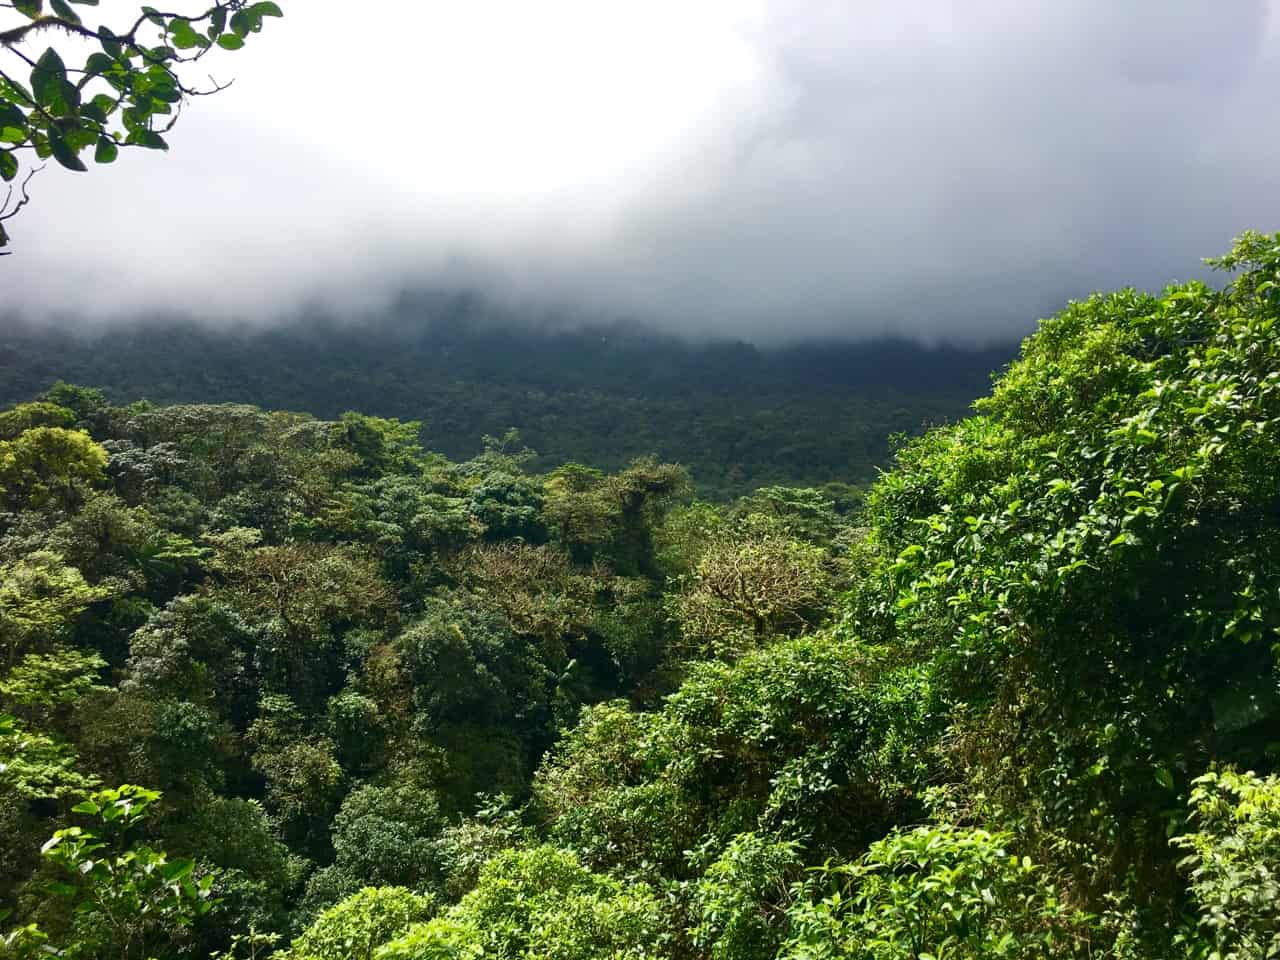 Wolken bedekken het bos en verdoezelen het zicht op de vulkaan Tenorio in Costa Rica.